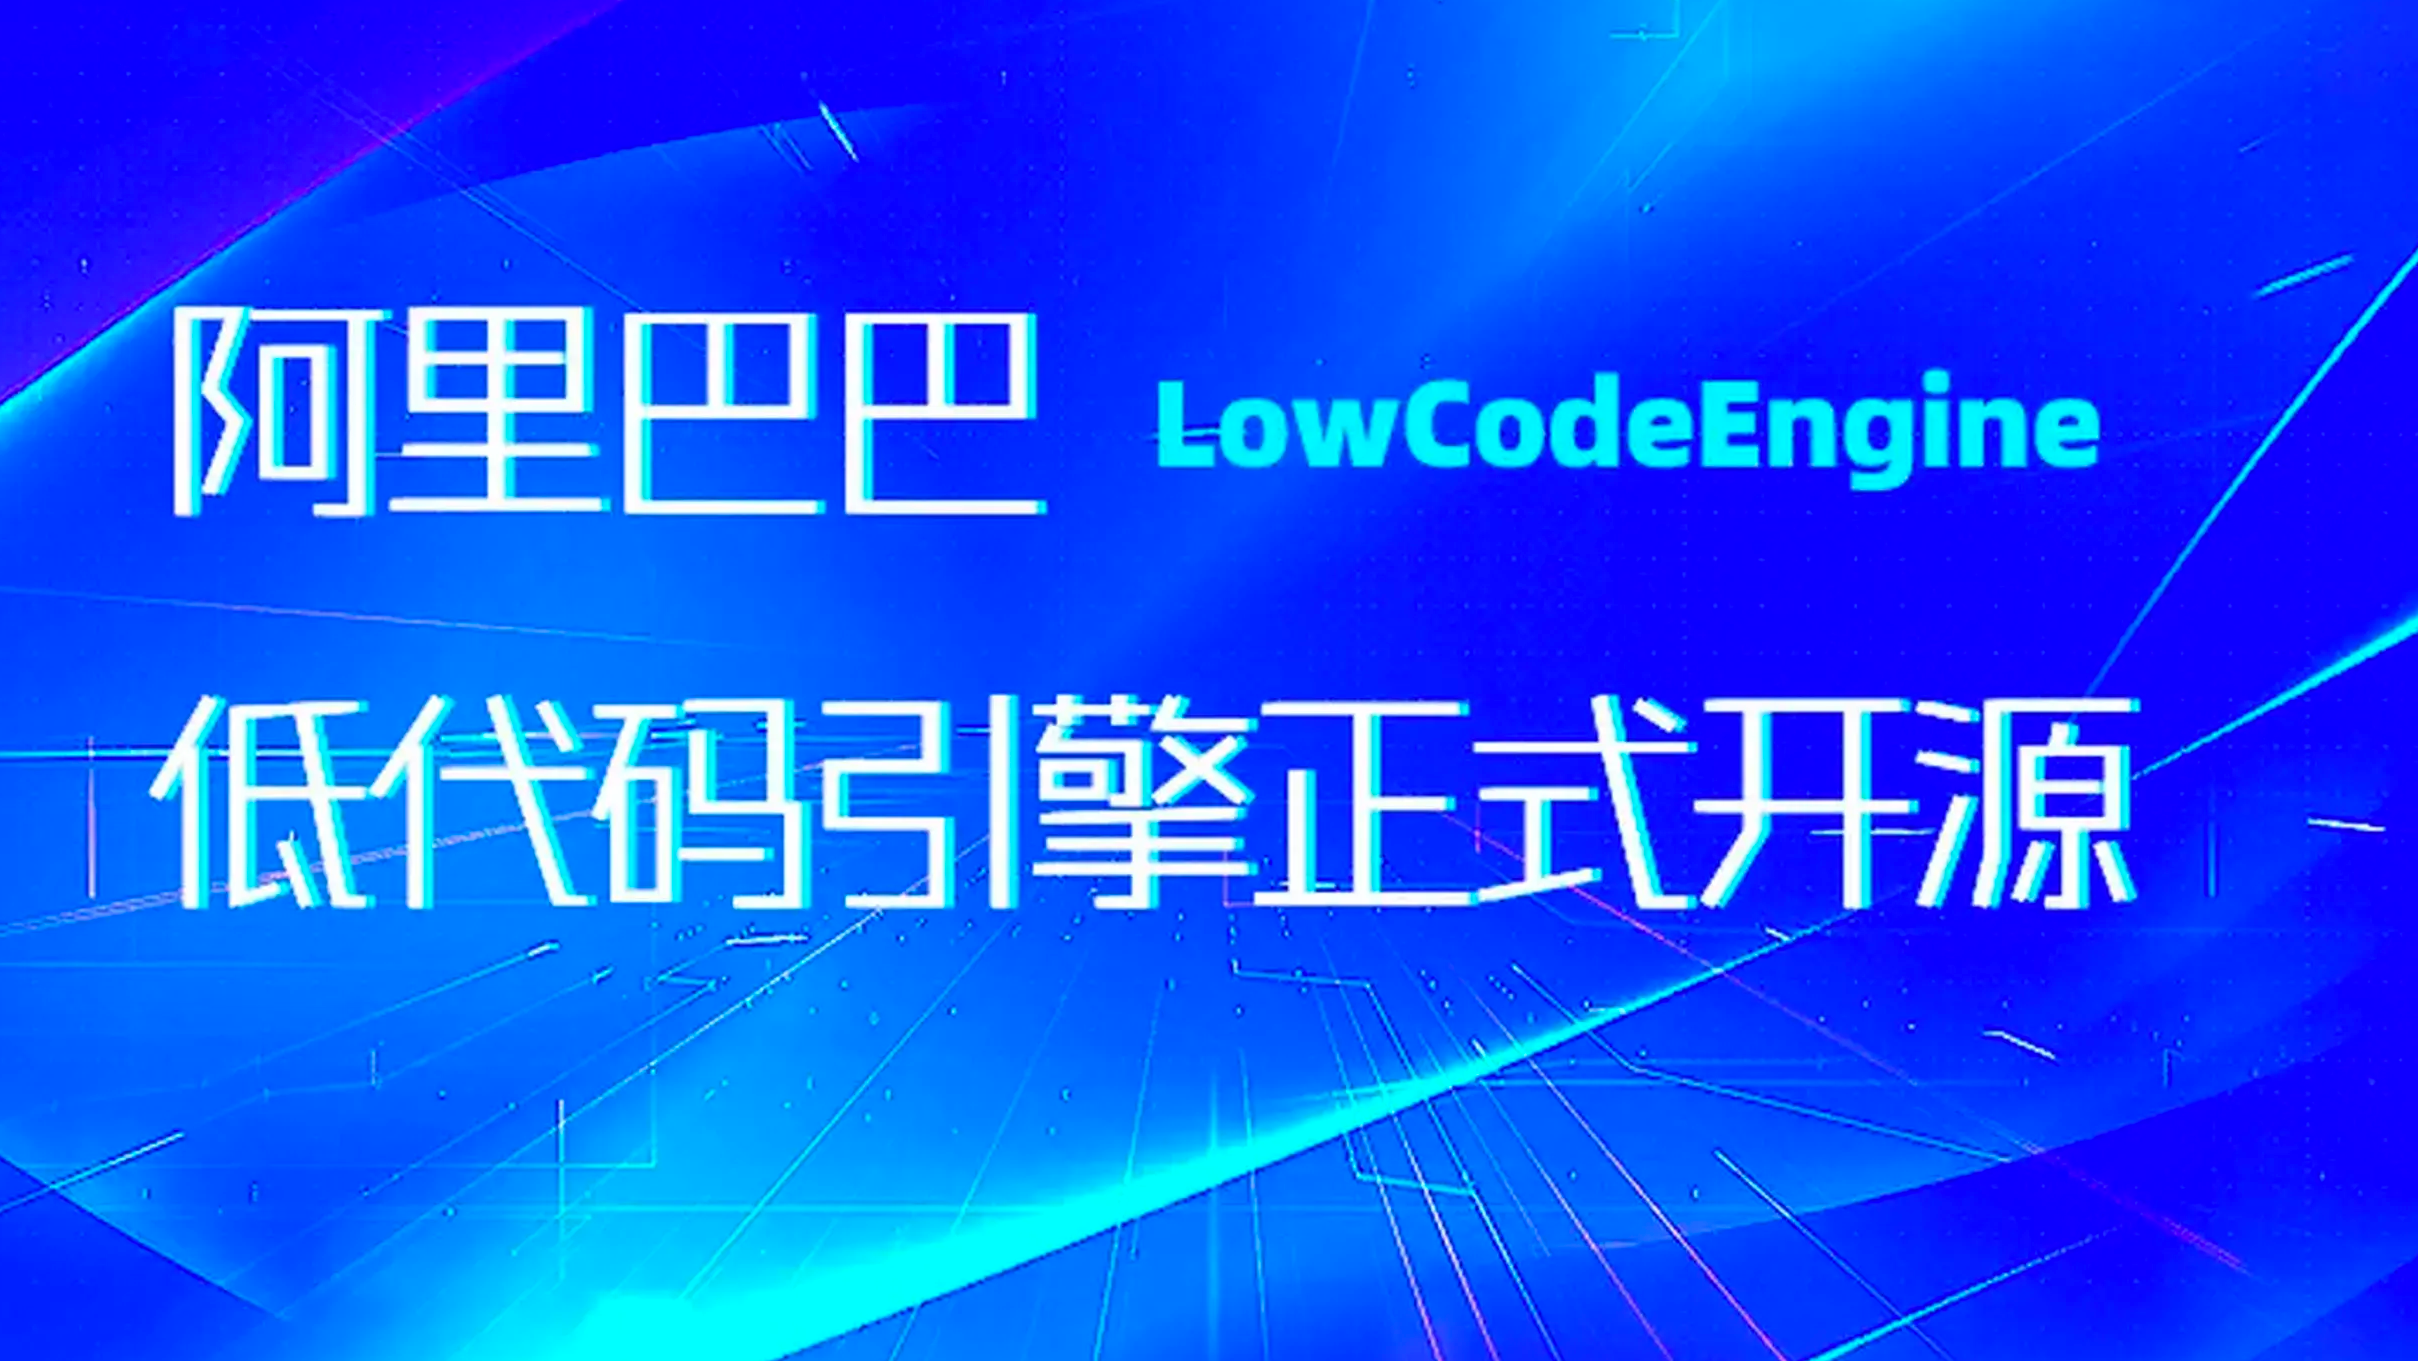 阿里低代码引擎 | LowCodeEngine - 多页面管理功能（提供完善 github 代码示例）